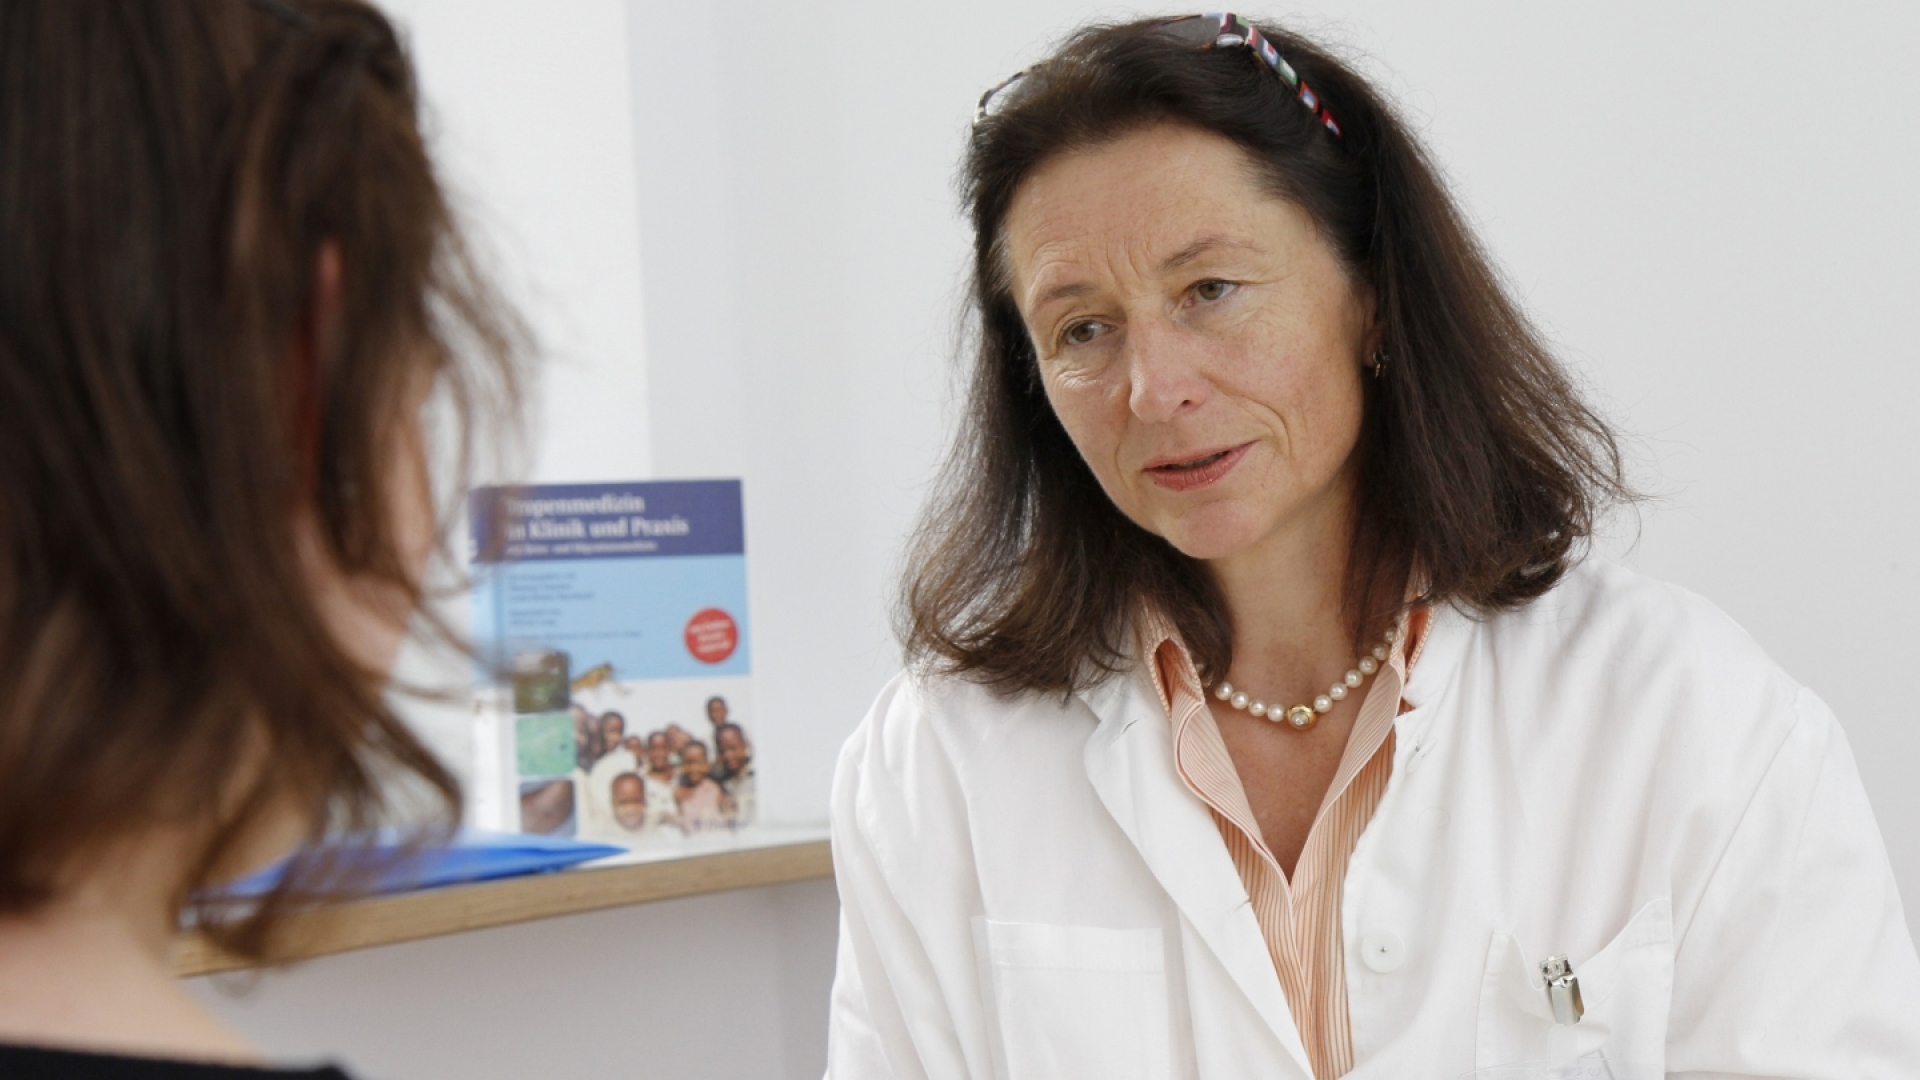 Dr. Hedwig Roggendorf ist Leiterin der Impfsprechstunde am Klinikum rechts der Isar